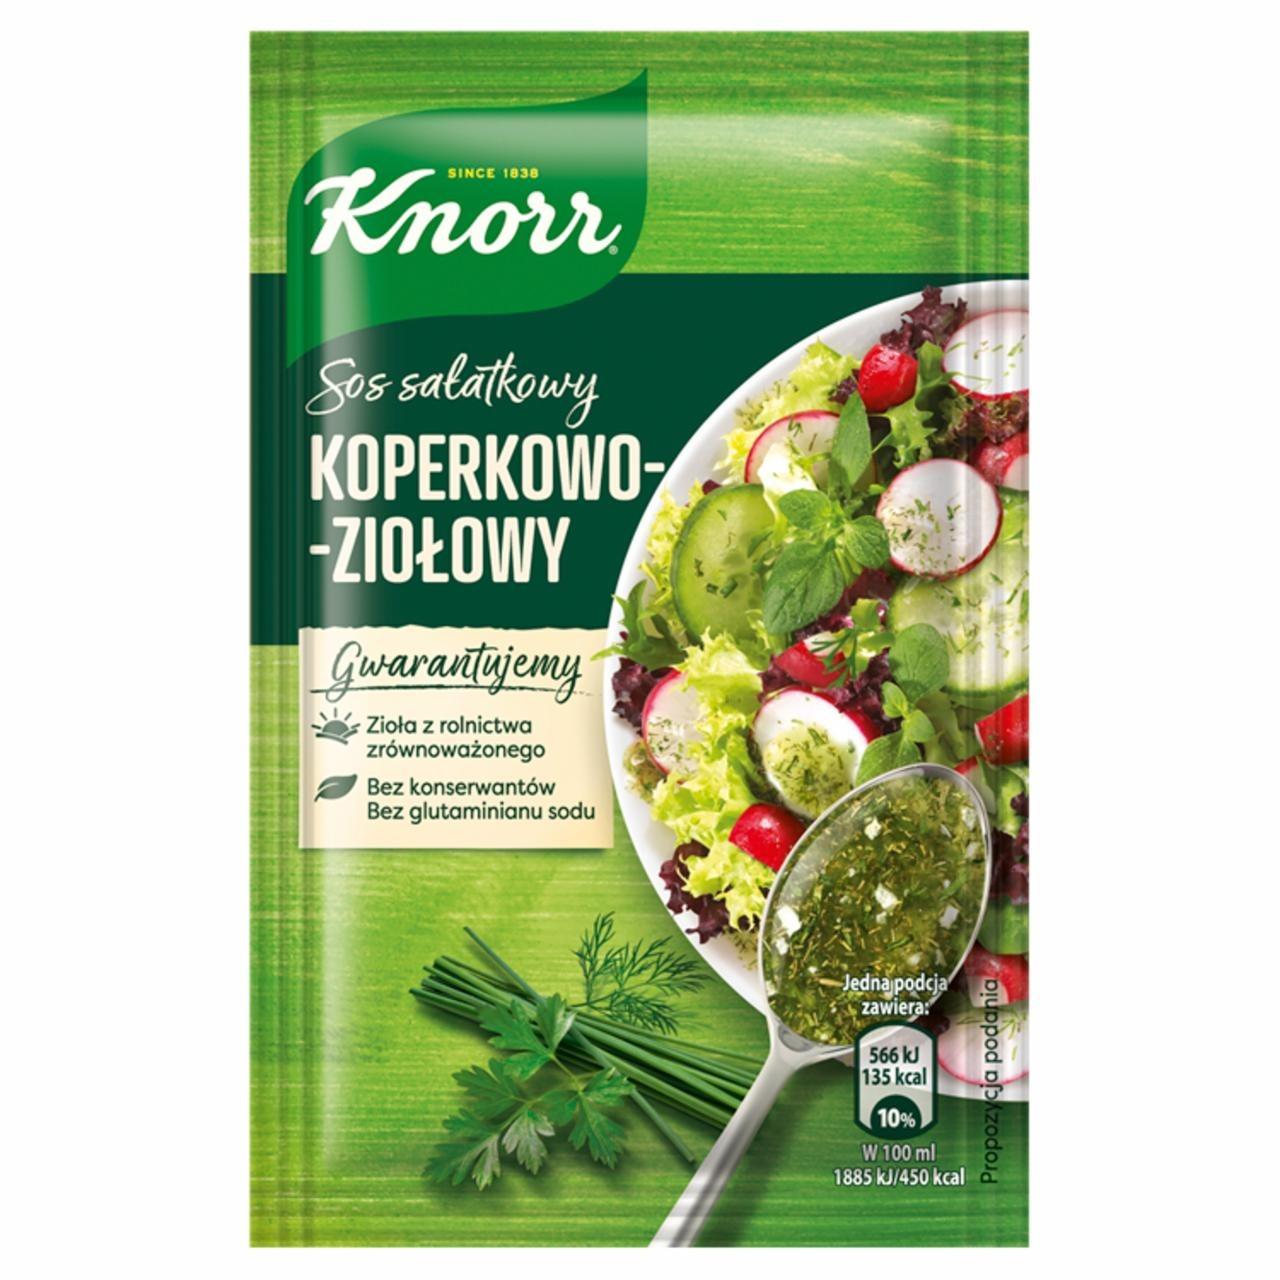 Zdjęcia - Sos sałatkowy koperkowo-ziołowy Knorr